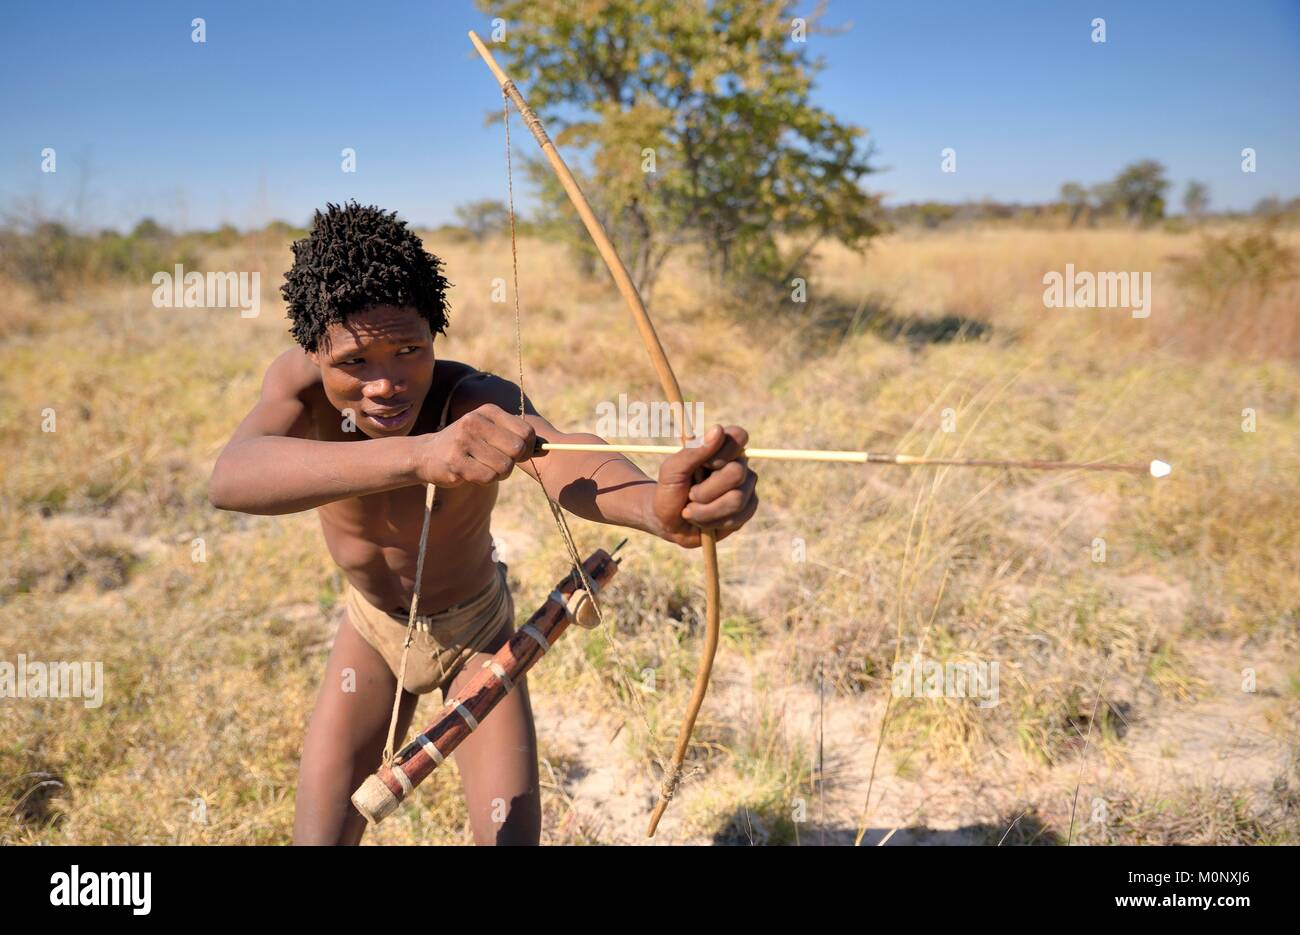 Bushman de los ju/' Hoansi-San con arco y flecha mientras caza,pueblo //Xa/oba,cerca de Tsumkwe,Otjozondjupa región,Namibia Foto de stock